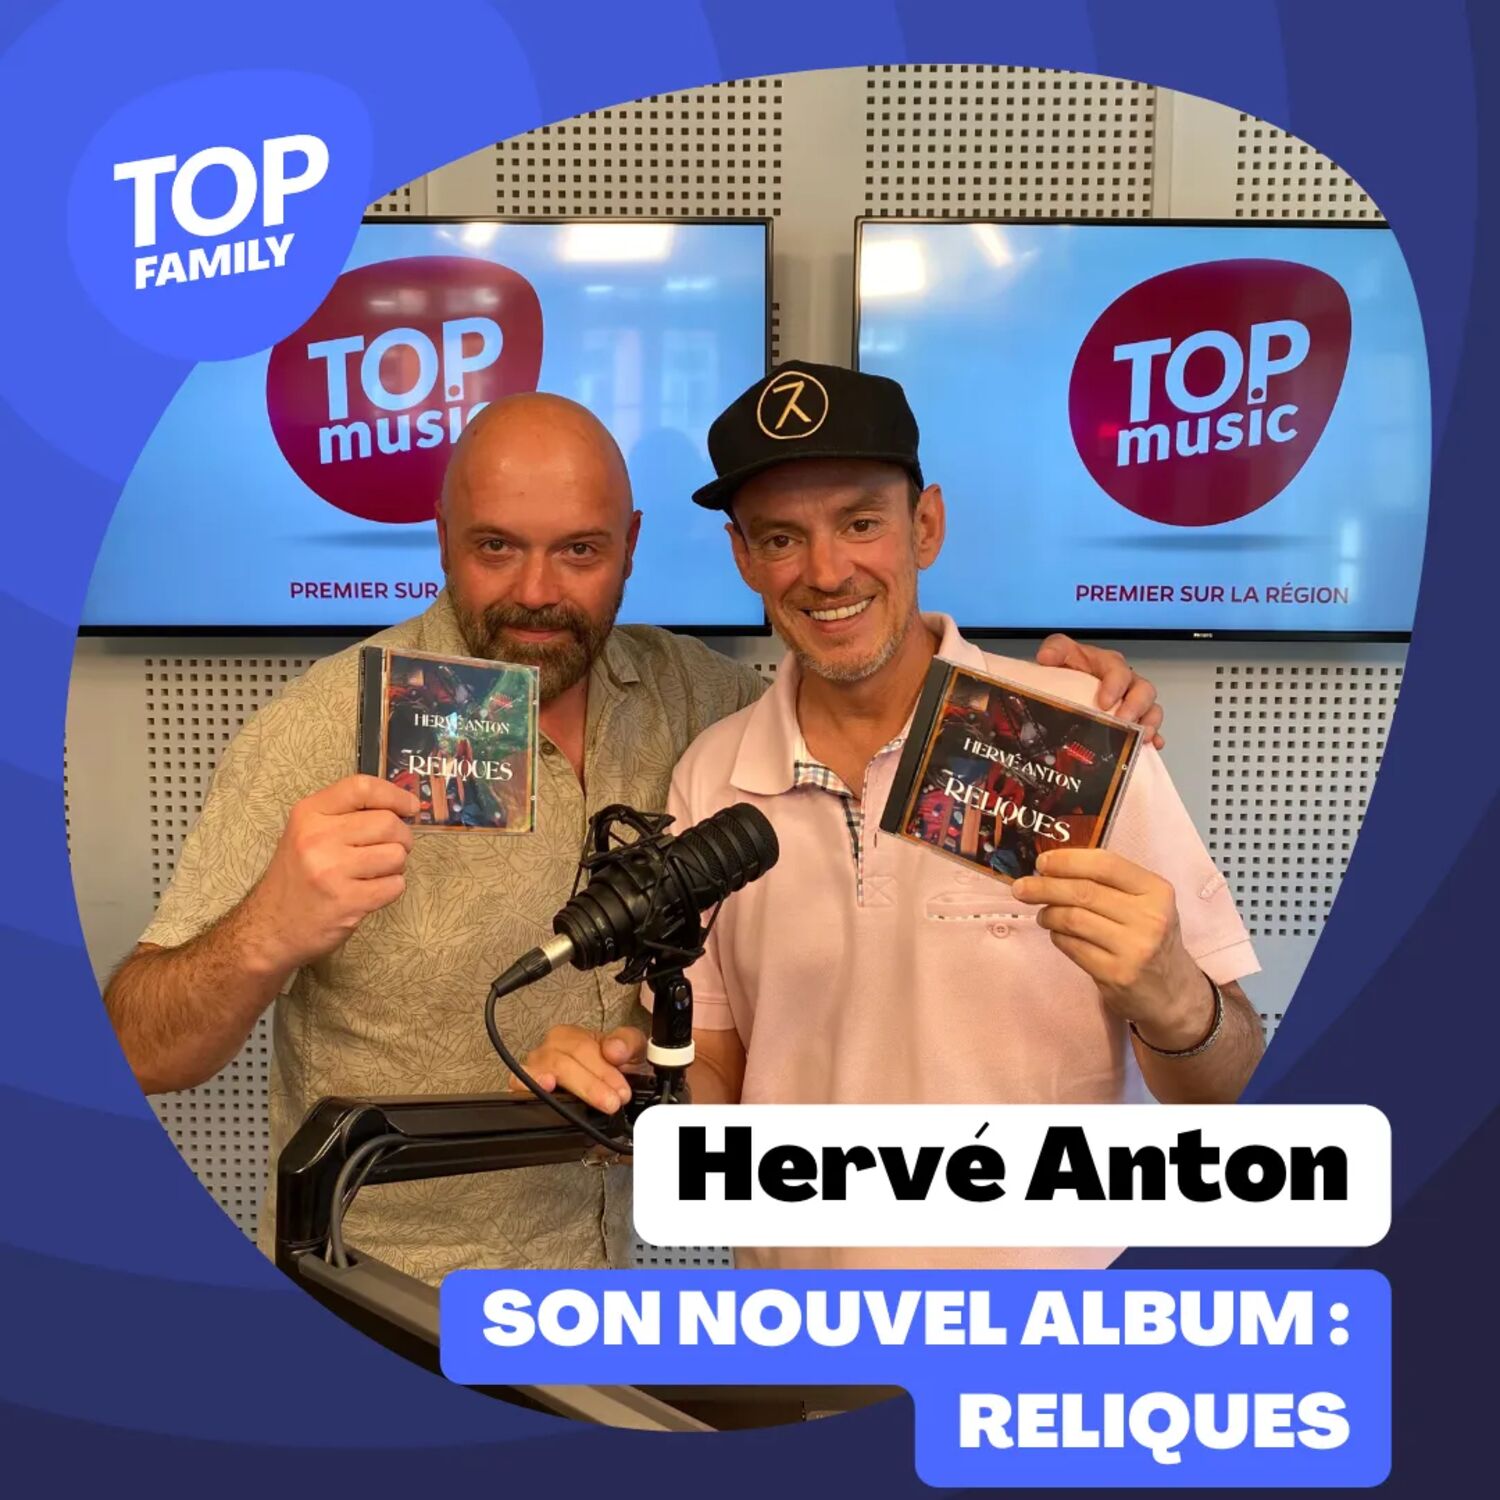 Top Family - Hervé Anton présente son nouvel album : Reliques